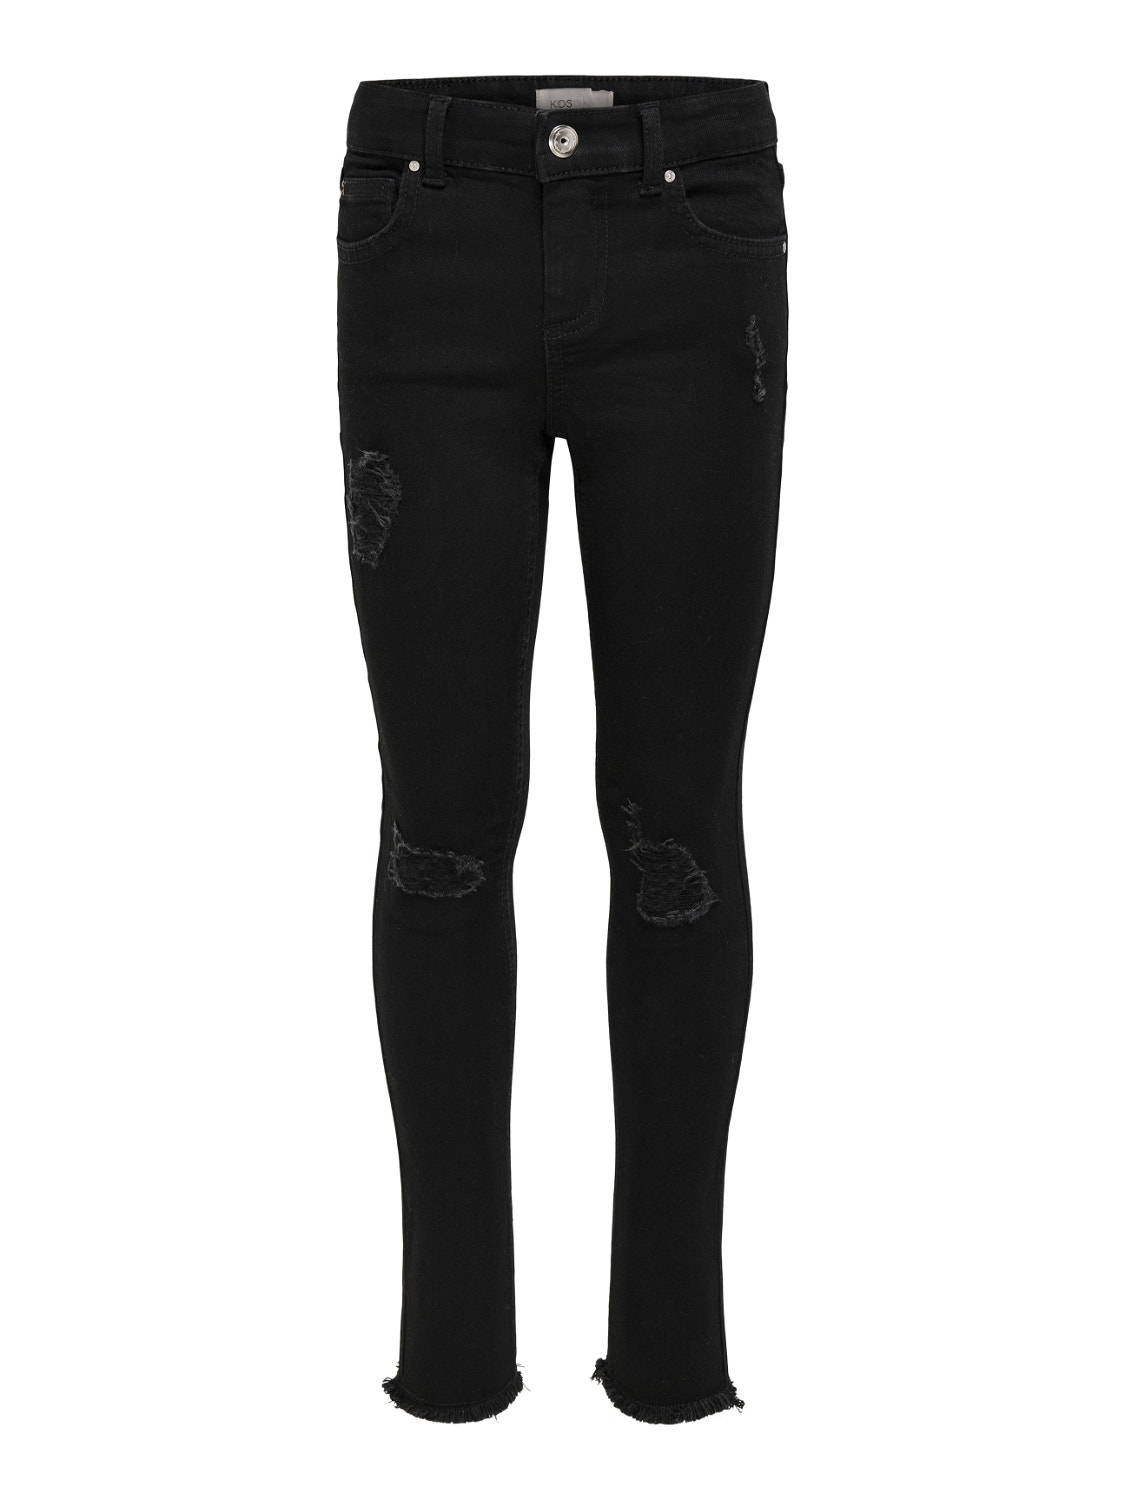 ONLY Skinny Fit Jeans -Black Denim - 15241444